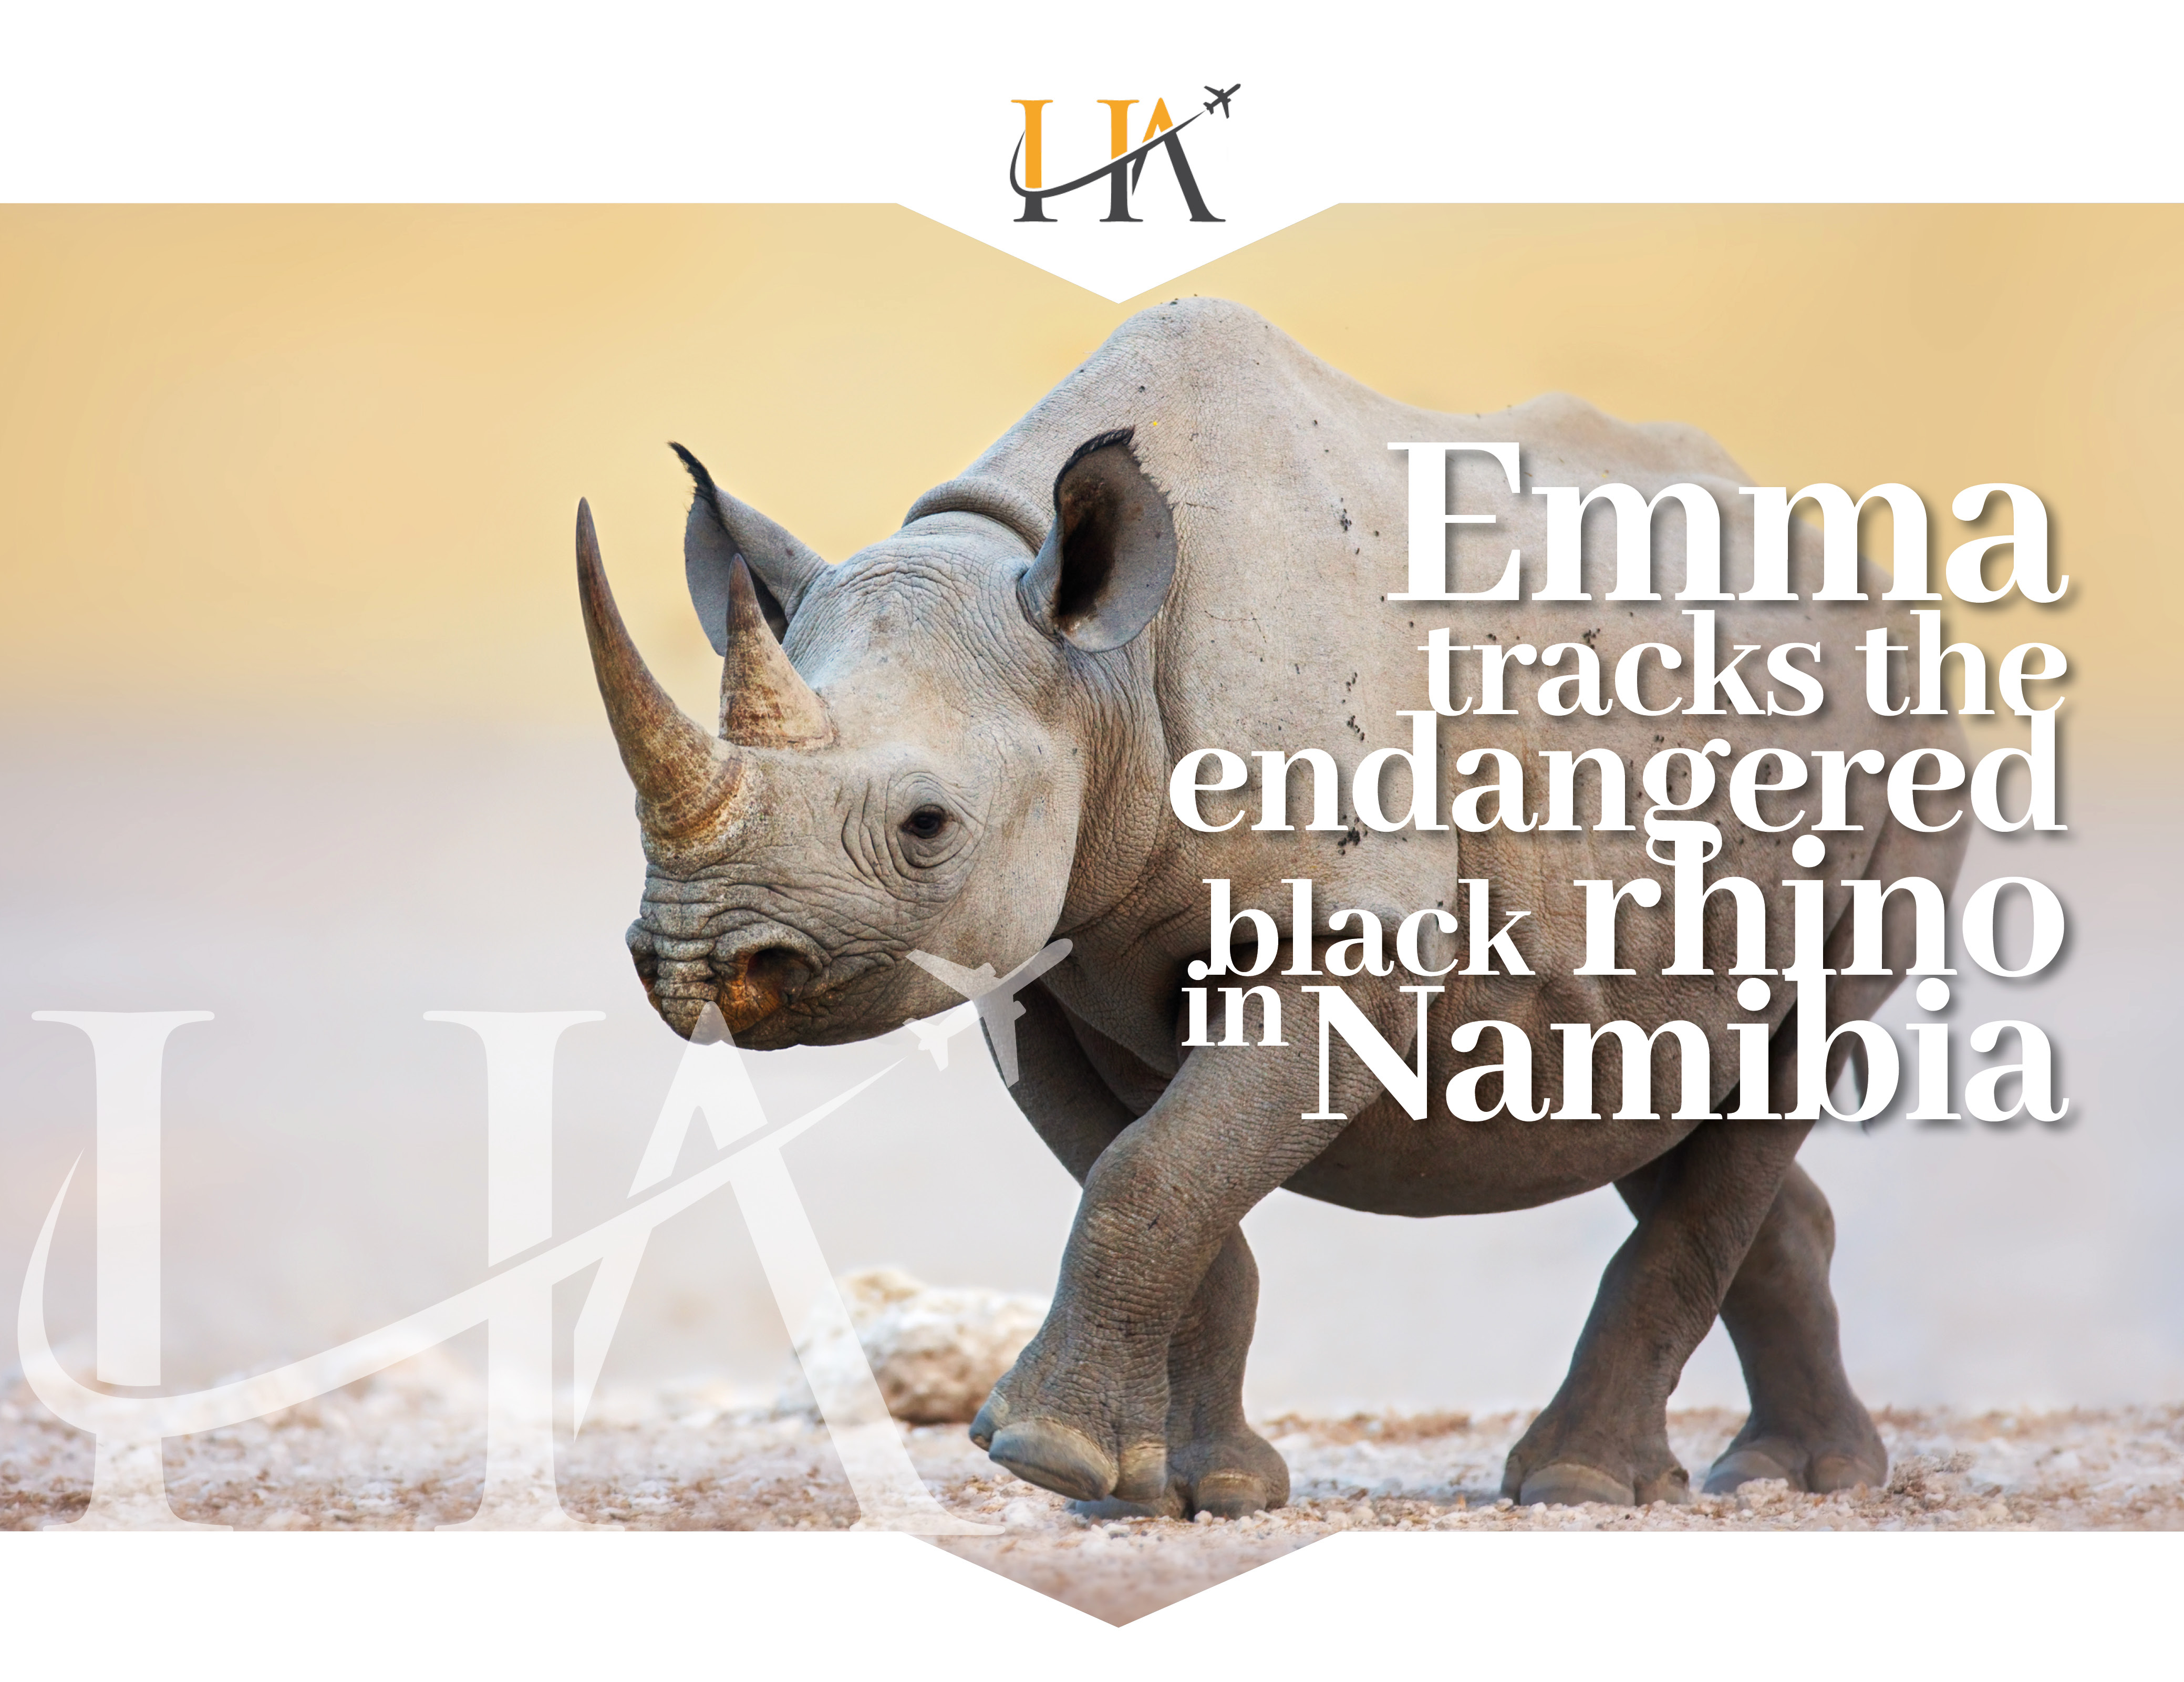 Emma tracks black rhino in Namibia